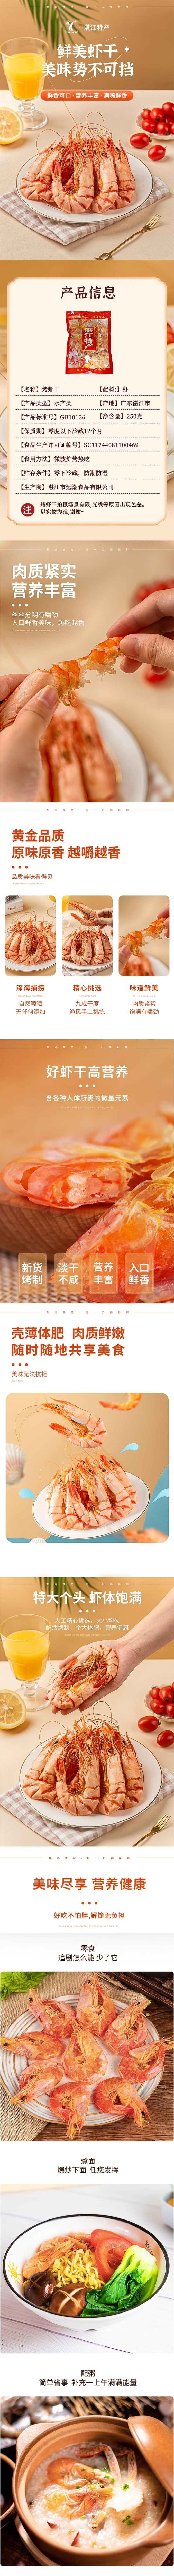 远潮烤虾干湛江特产海鲜补品礼袋装250g